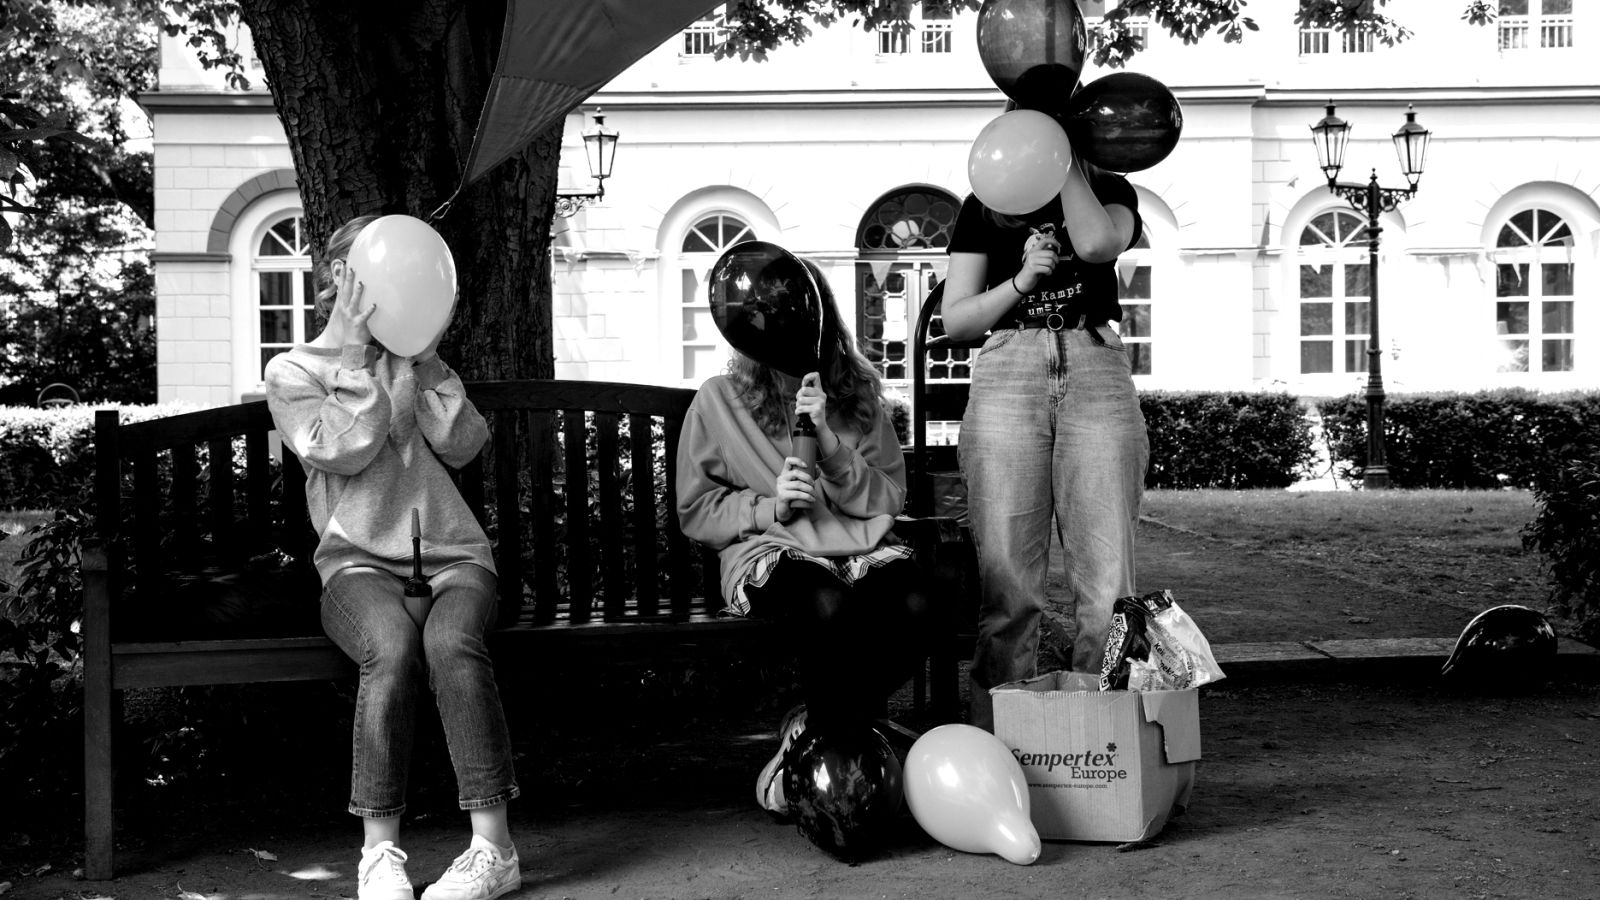 schwarz/weiß-Motiv: junge Volunteers sitzen auf einer Parkbank unter einem Baum und blasen Luftballons auf. Im Hintergrund ist das Marinsstift in Moers zu sehen.